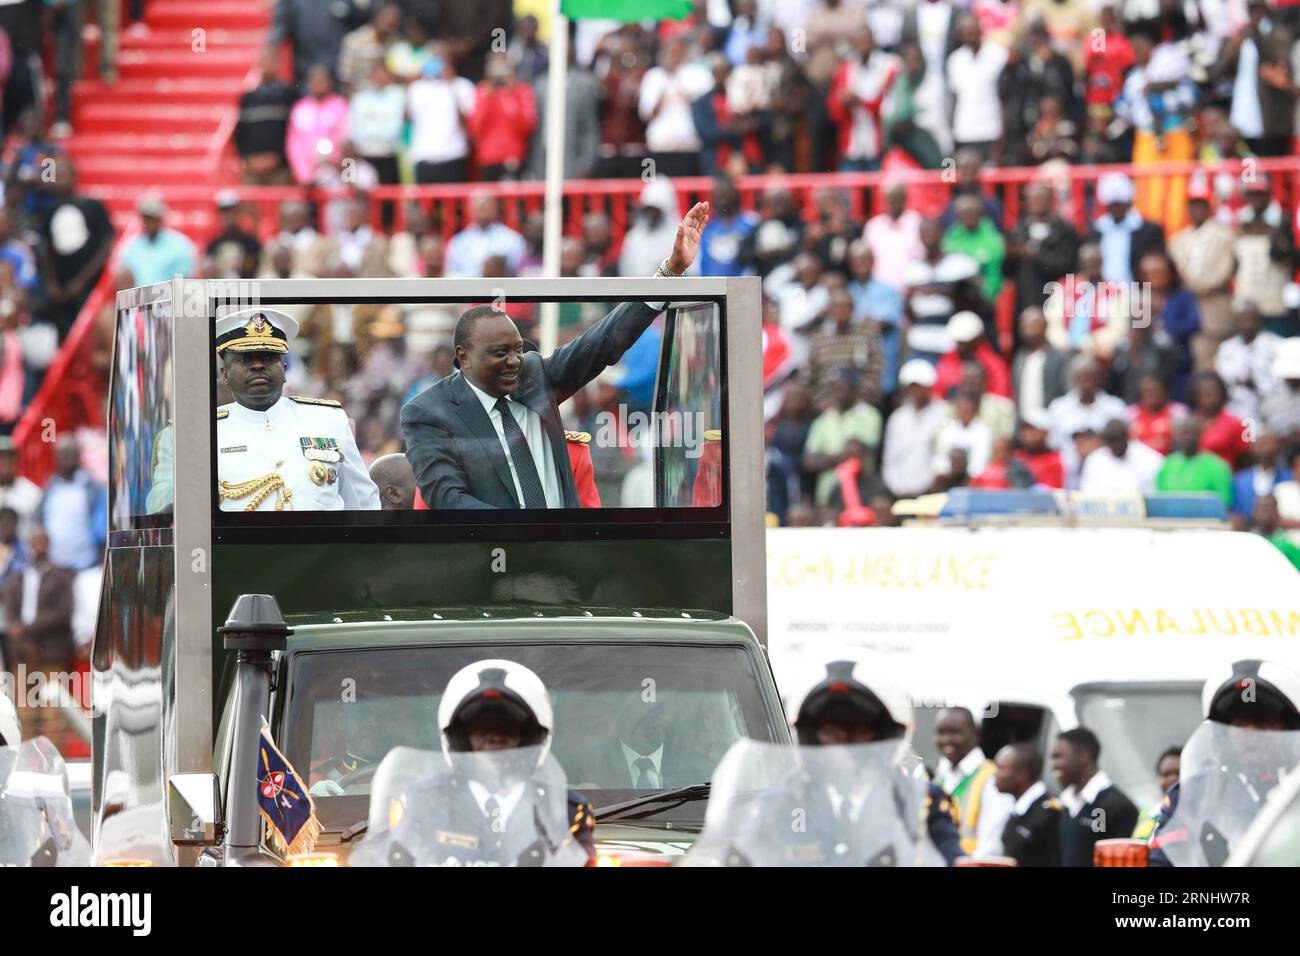 Feierlichkeiten zu Kenias 53. Unabhängigkeitstag in Nairobi (161212) -- NAIROBI, 12 dicembre 2016 -- il presidente keniota Uhuru Kenyatta onda alle persone durante le celebrazioni per celebrare il 53° anniversario dell'indipendenza della nazione al Nyayo National Stadium di Nairobi, Kenya, 12 dicembre 2016. ) (dtf) GIORNATA DELL'INDIPENDENZA KENYA-NAIROBI PanxSiwei PUBLICATIONxNOTxINxCHN celebrazioni in Kenya 53 giorno dell'indipendenza a Nairobi 161212 Nairobi DEC 12 2016 il presidente keniota Uhuru Kenyatta si batte alle celebrità durante le celebrazioni in occasione del 53° anniversario dell'indipendenza della Nazione AL Nyayo National Stage Foto Stock